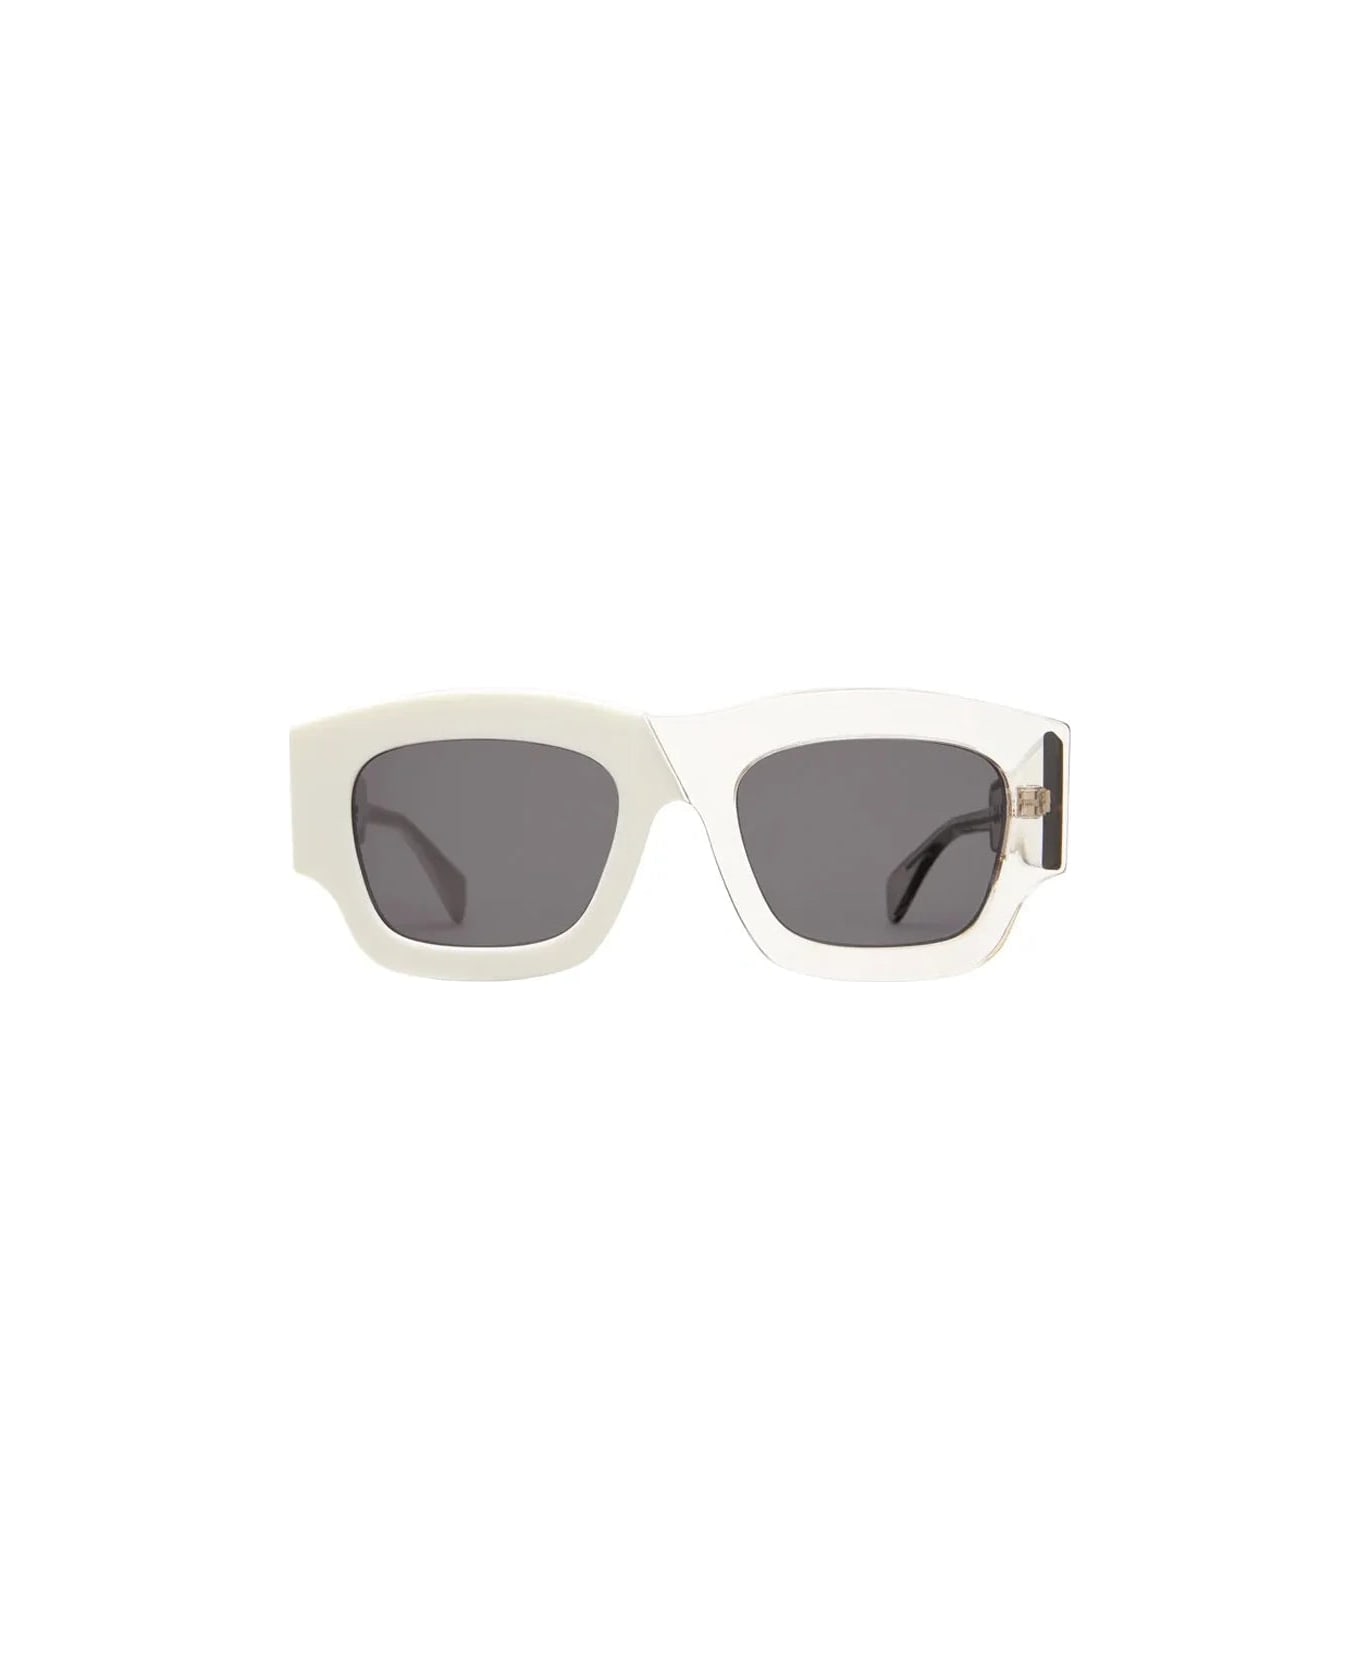 Kuboraum C8 Mik - Milk White + Smoke Sunglasses - white/grey